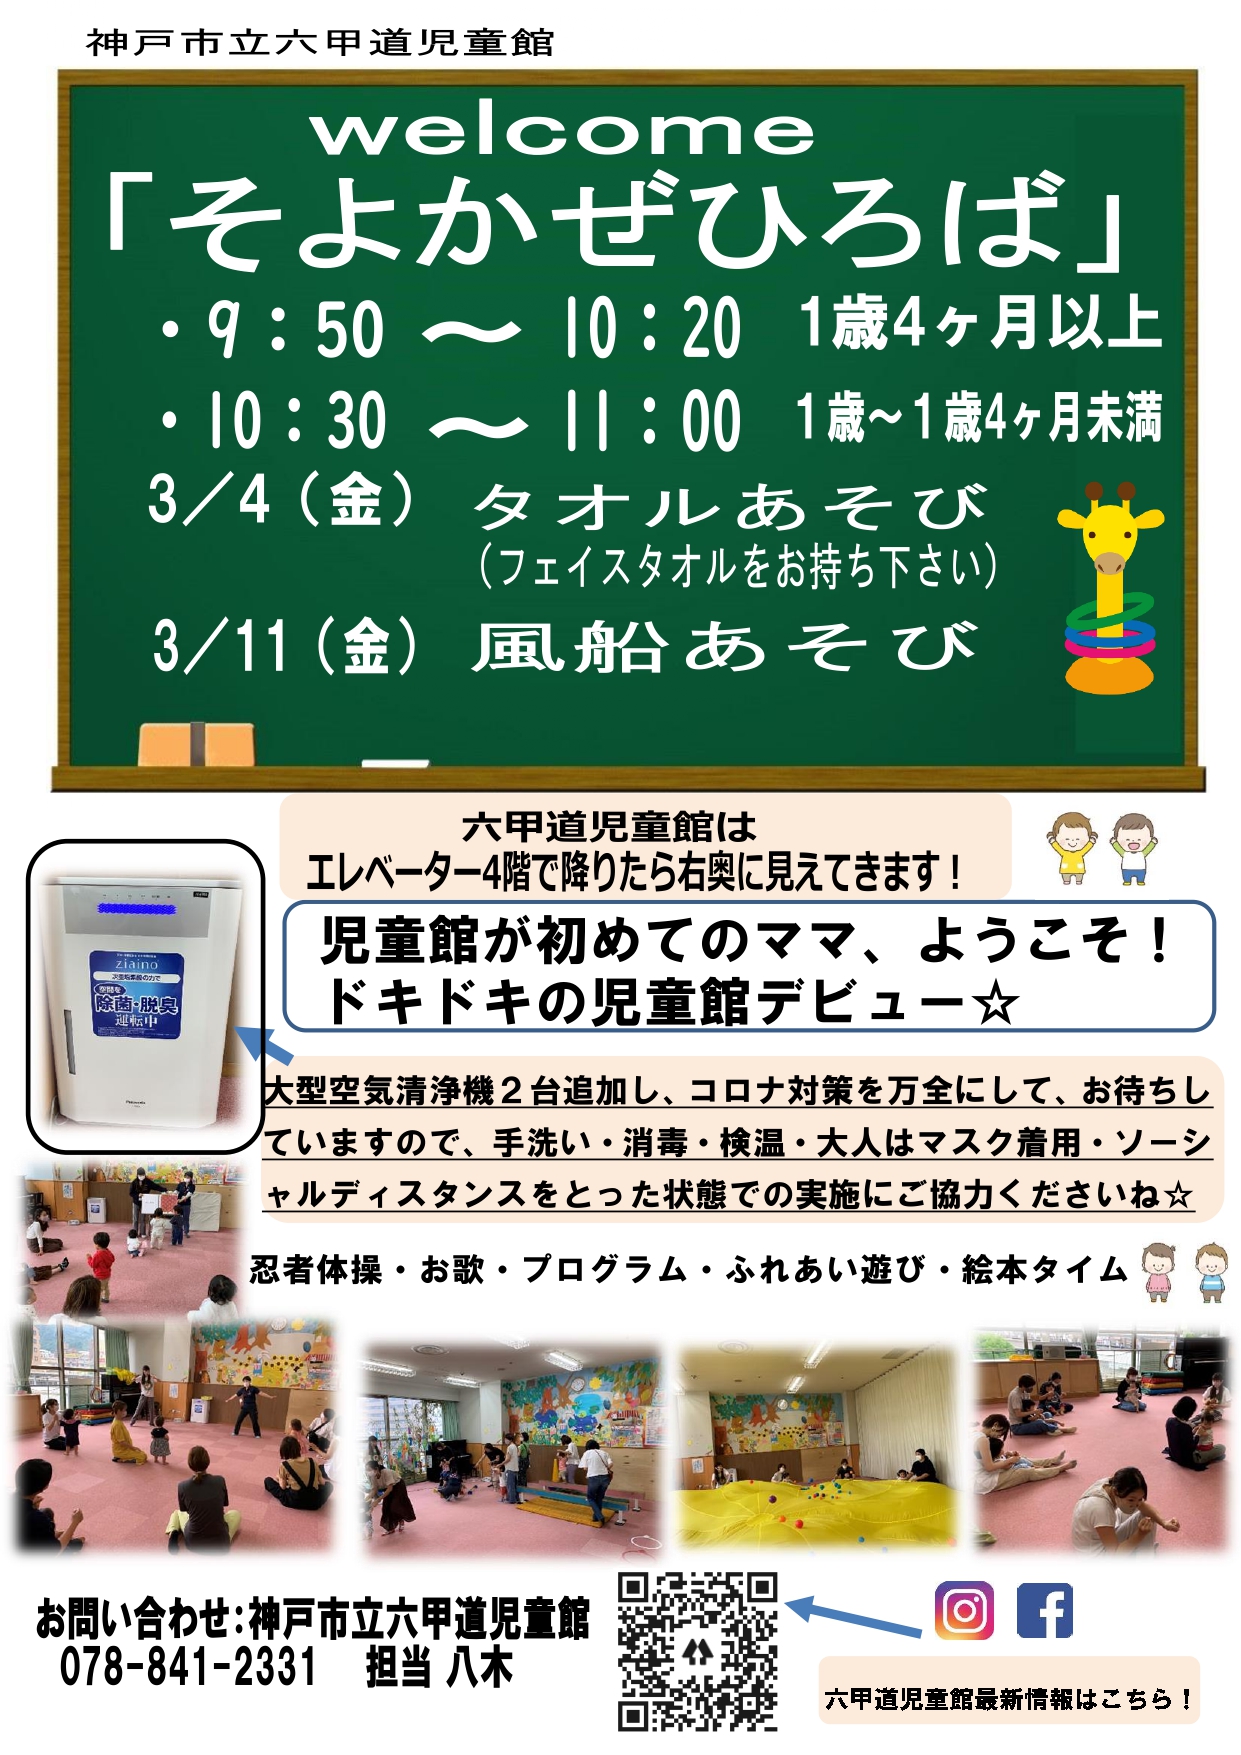 神戸市立六甲道児童館「そよかぜひろば」R4.3月のチラシです★